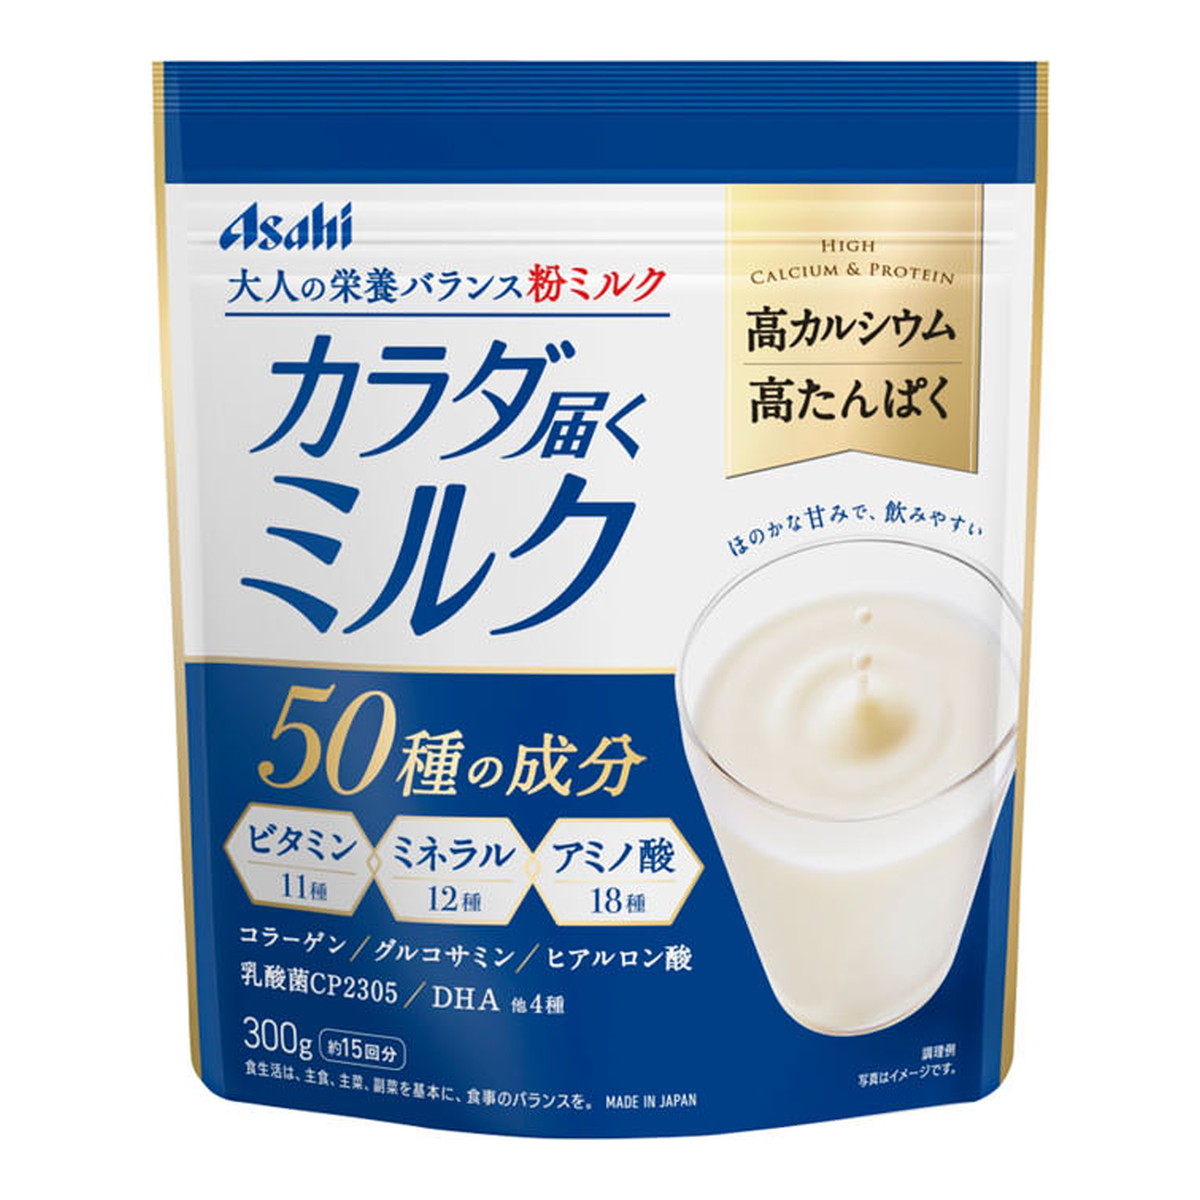 アサヒグループ食品 アサヒグループ食品 カラダ届くミルク 300g×5個 栄養ドリンク、美容健康飲料の商品画像